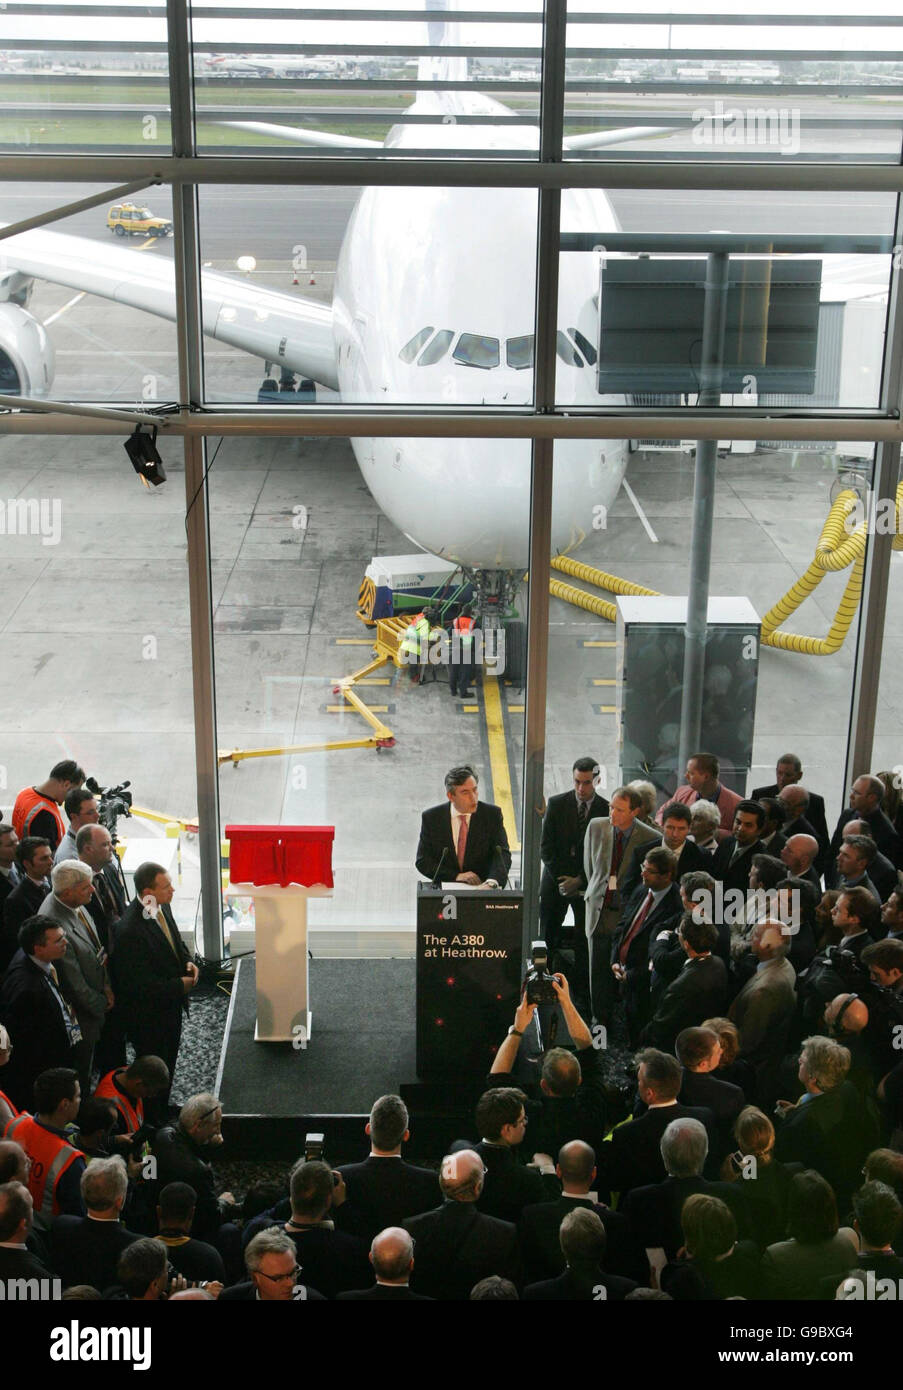 Le chancelier Gordon Brown s'adresse aux médias et aux invités après l'arrivée du plus grand avion de ligne au monde, le géant Airbus A380 de 555 places, à l'aéroport de Londres Heathrow. Banque D'Images